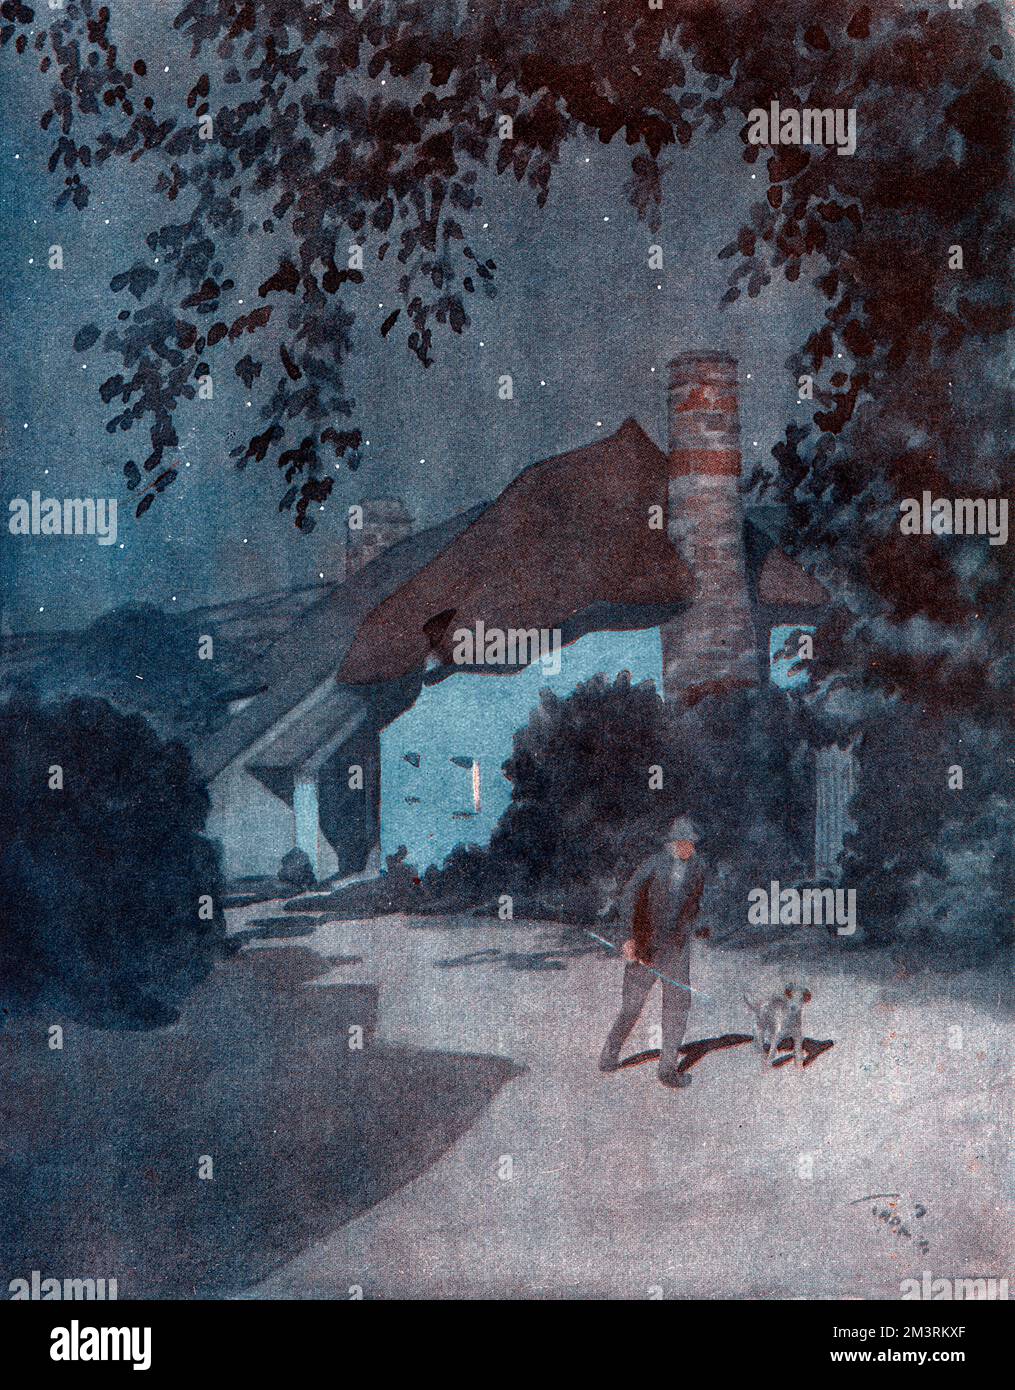 Homme marchant son chien le long d'un chemin mal éclairé la nuit, après un petit chalet Date: 1928 Banque D'Images